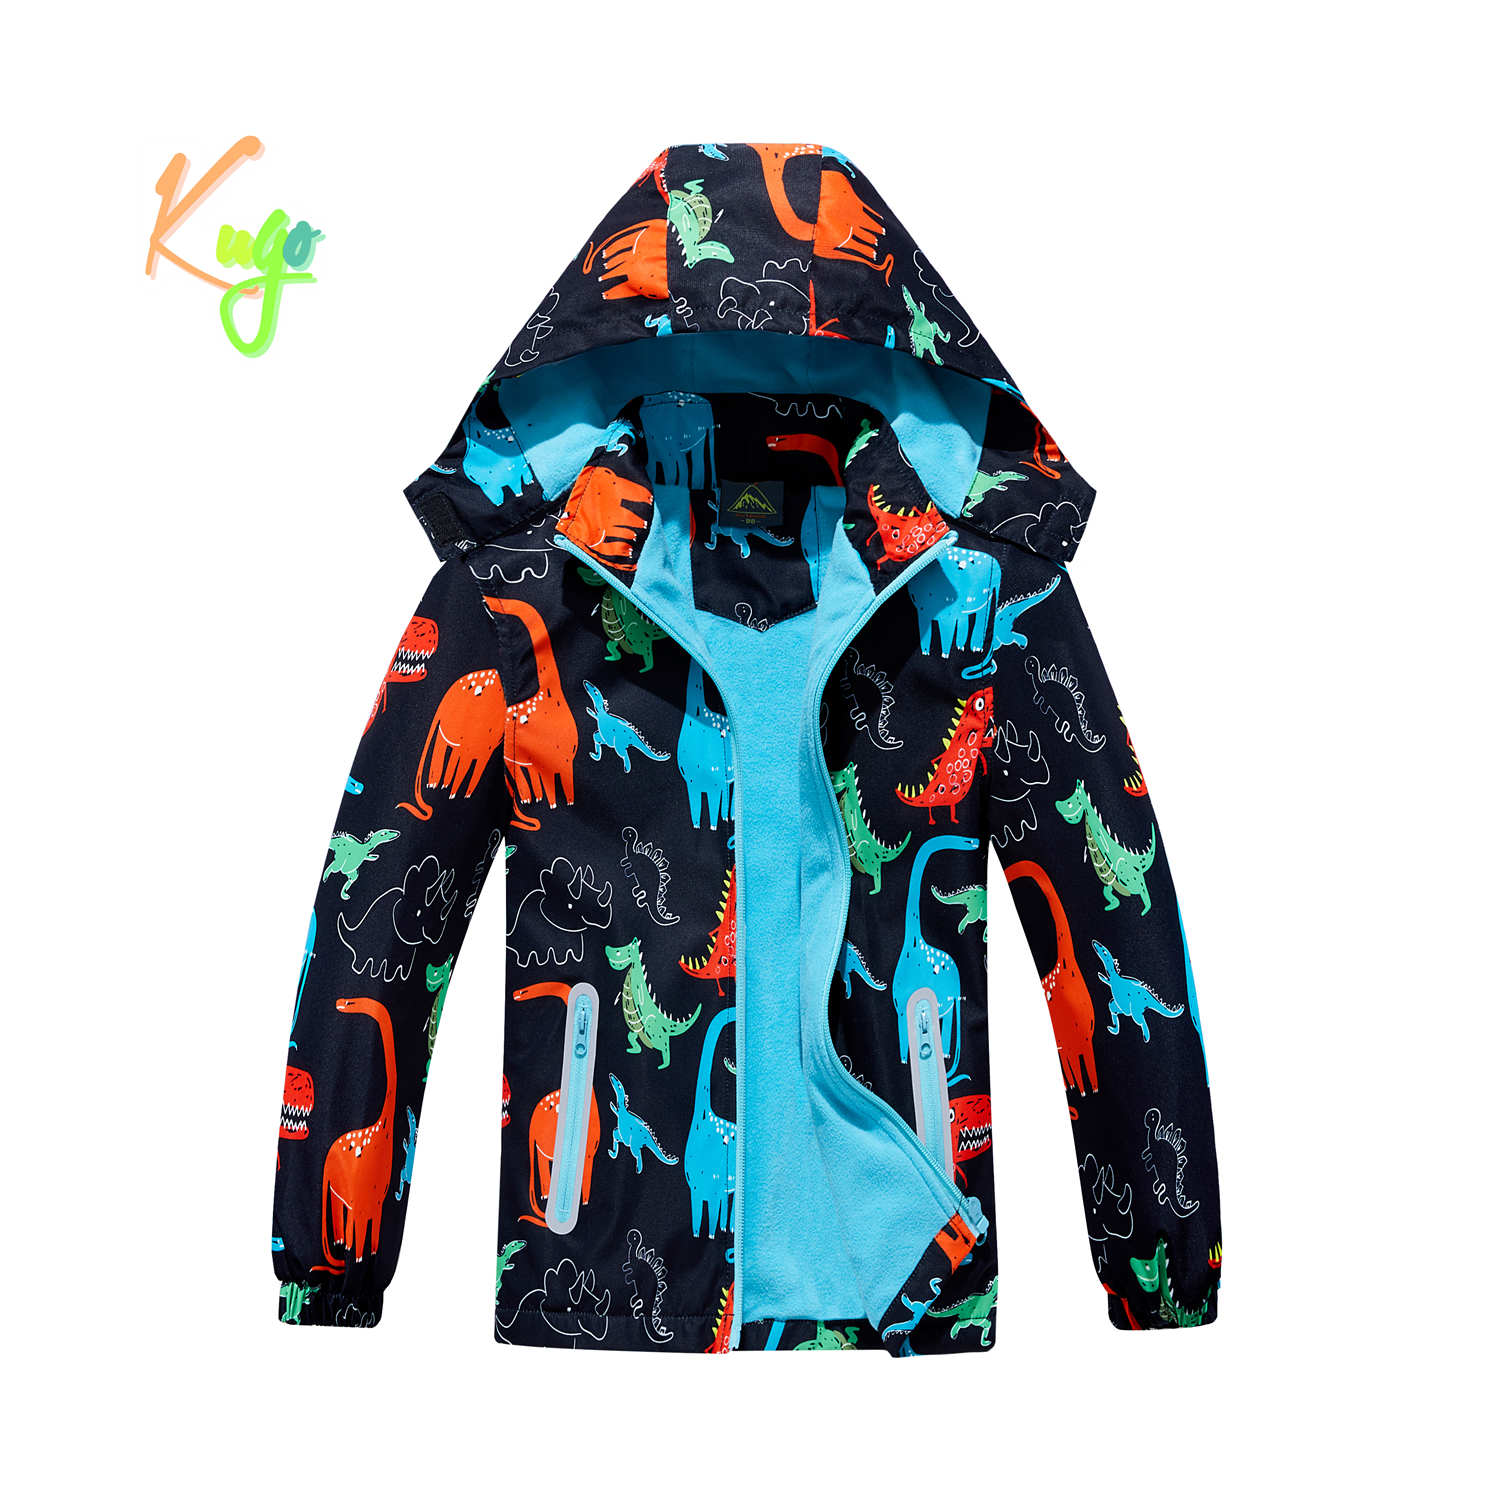 Chlapecká podzimní bunda, zateplená - KUGO B2857, černá, dinosauři Barva: Černá, Velikost: 128